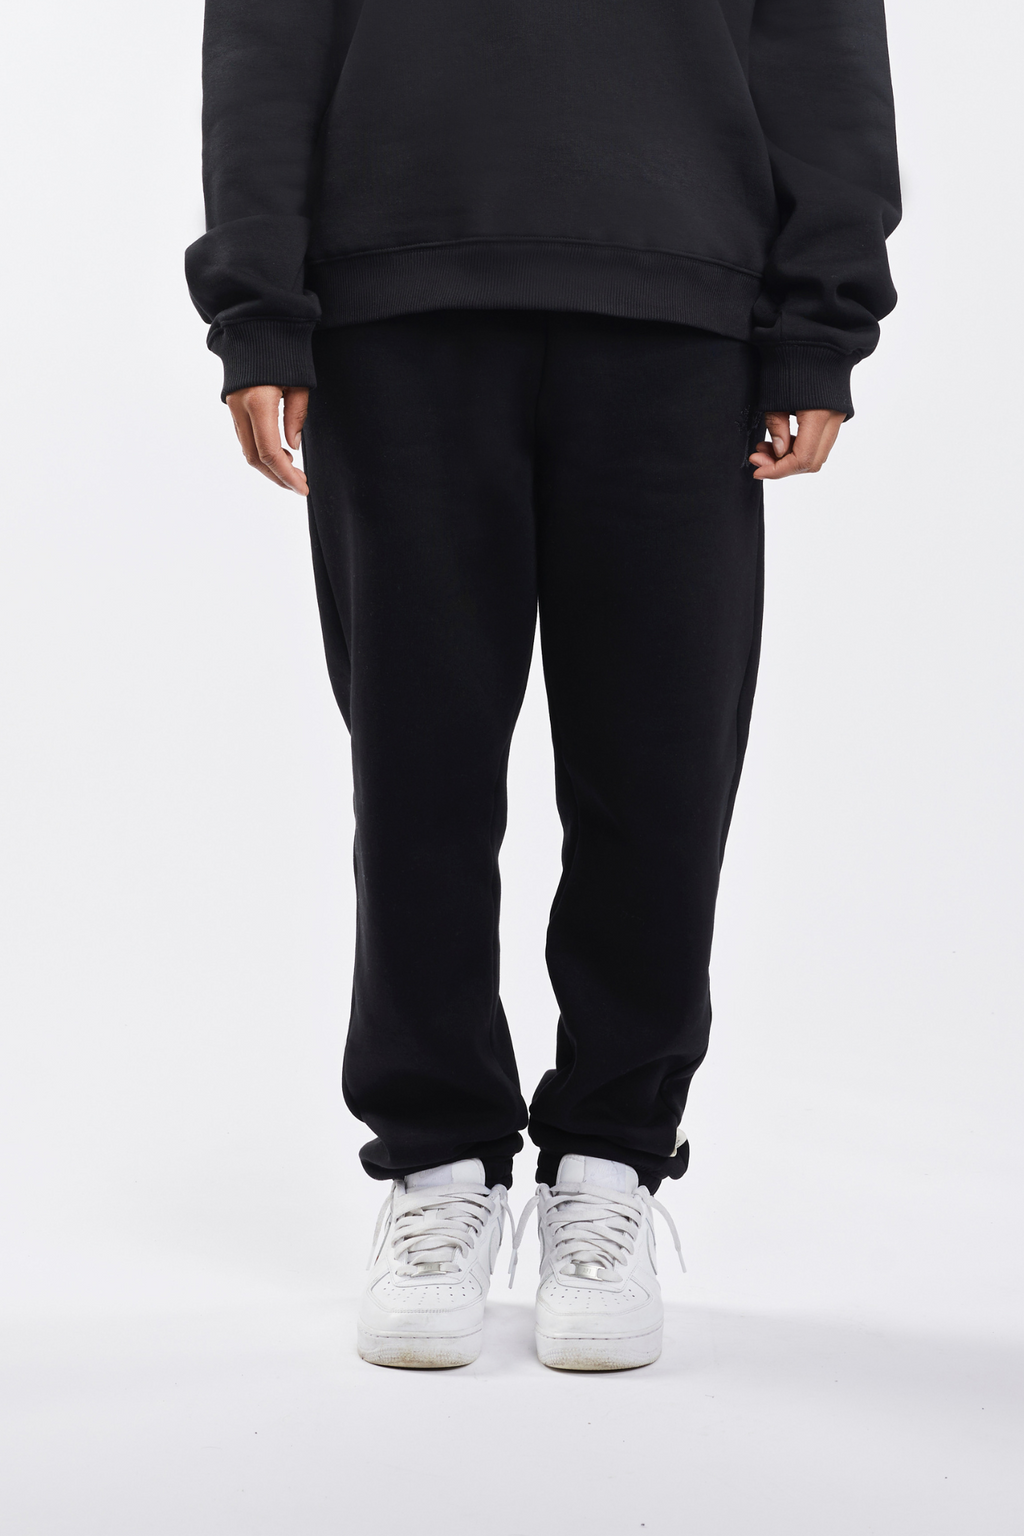 Chamakam Oversized Cozy Sweatpants Black